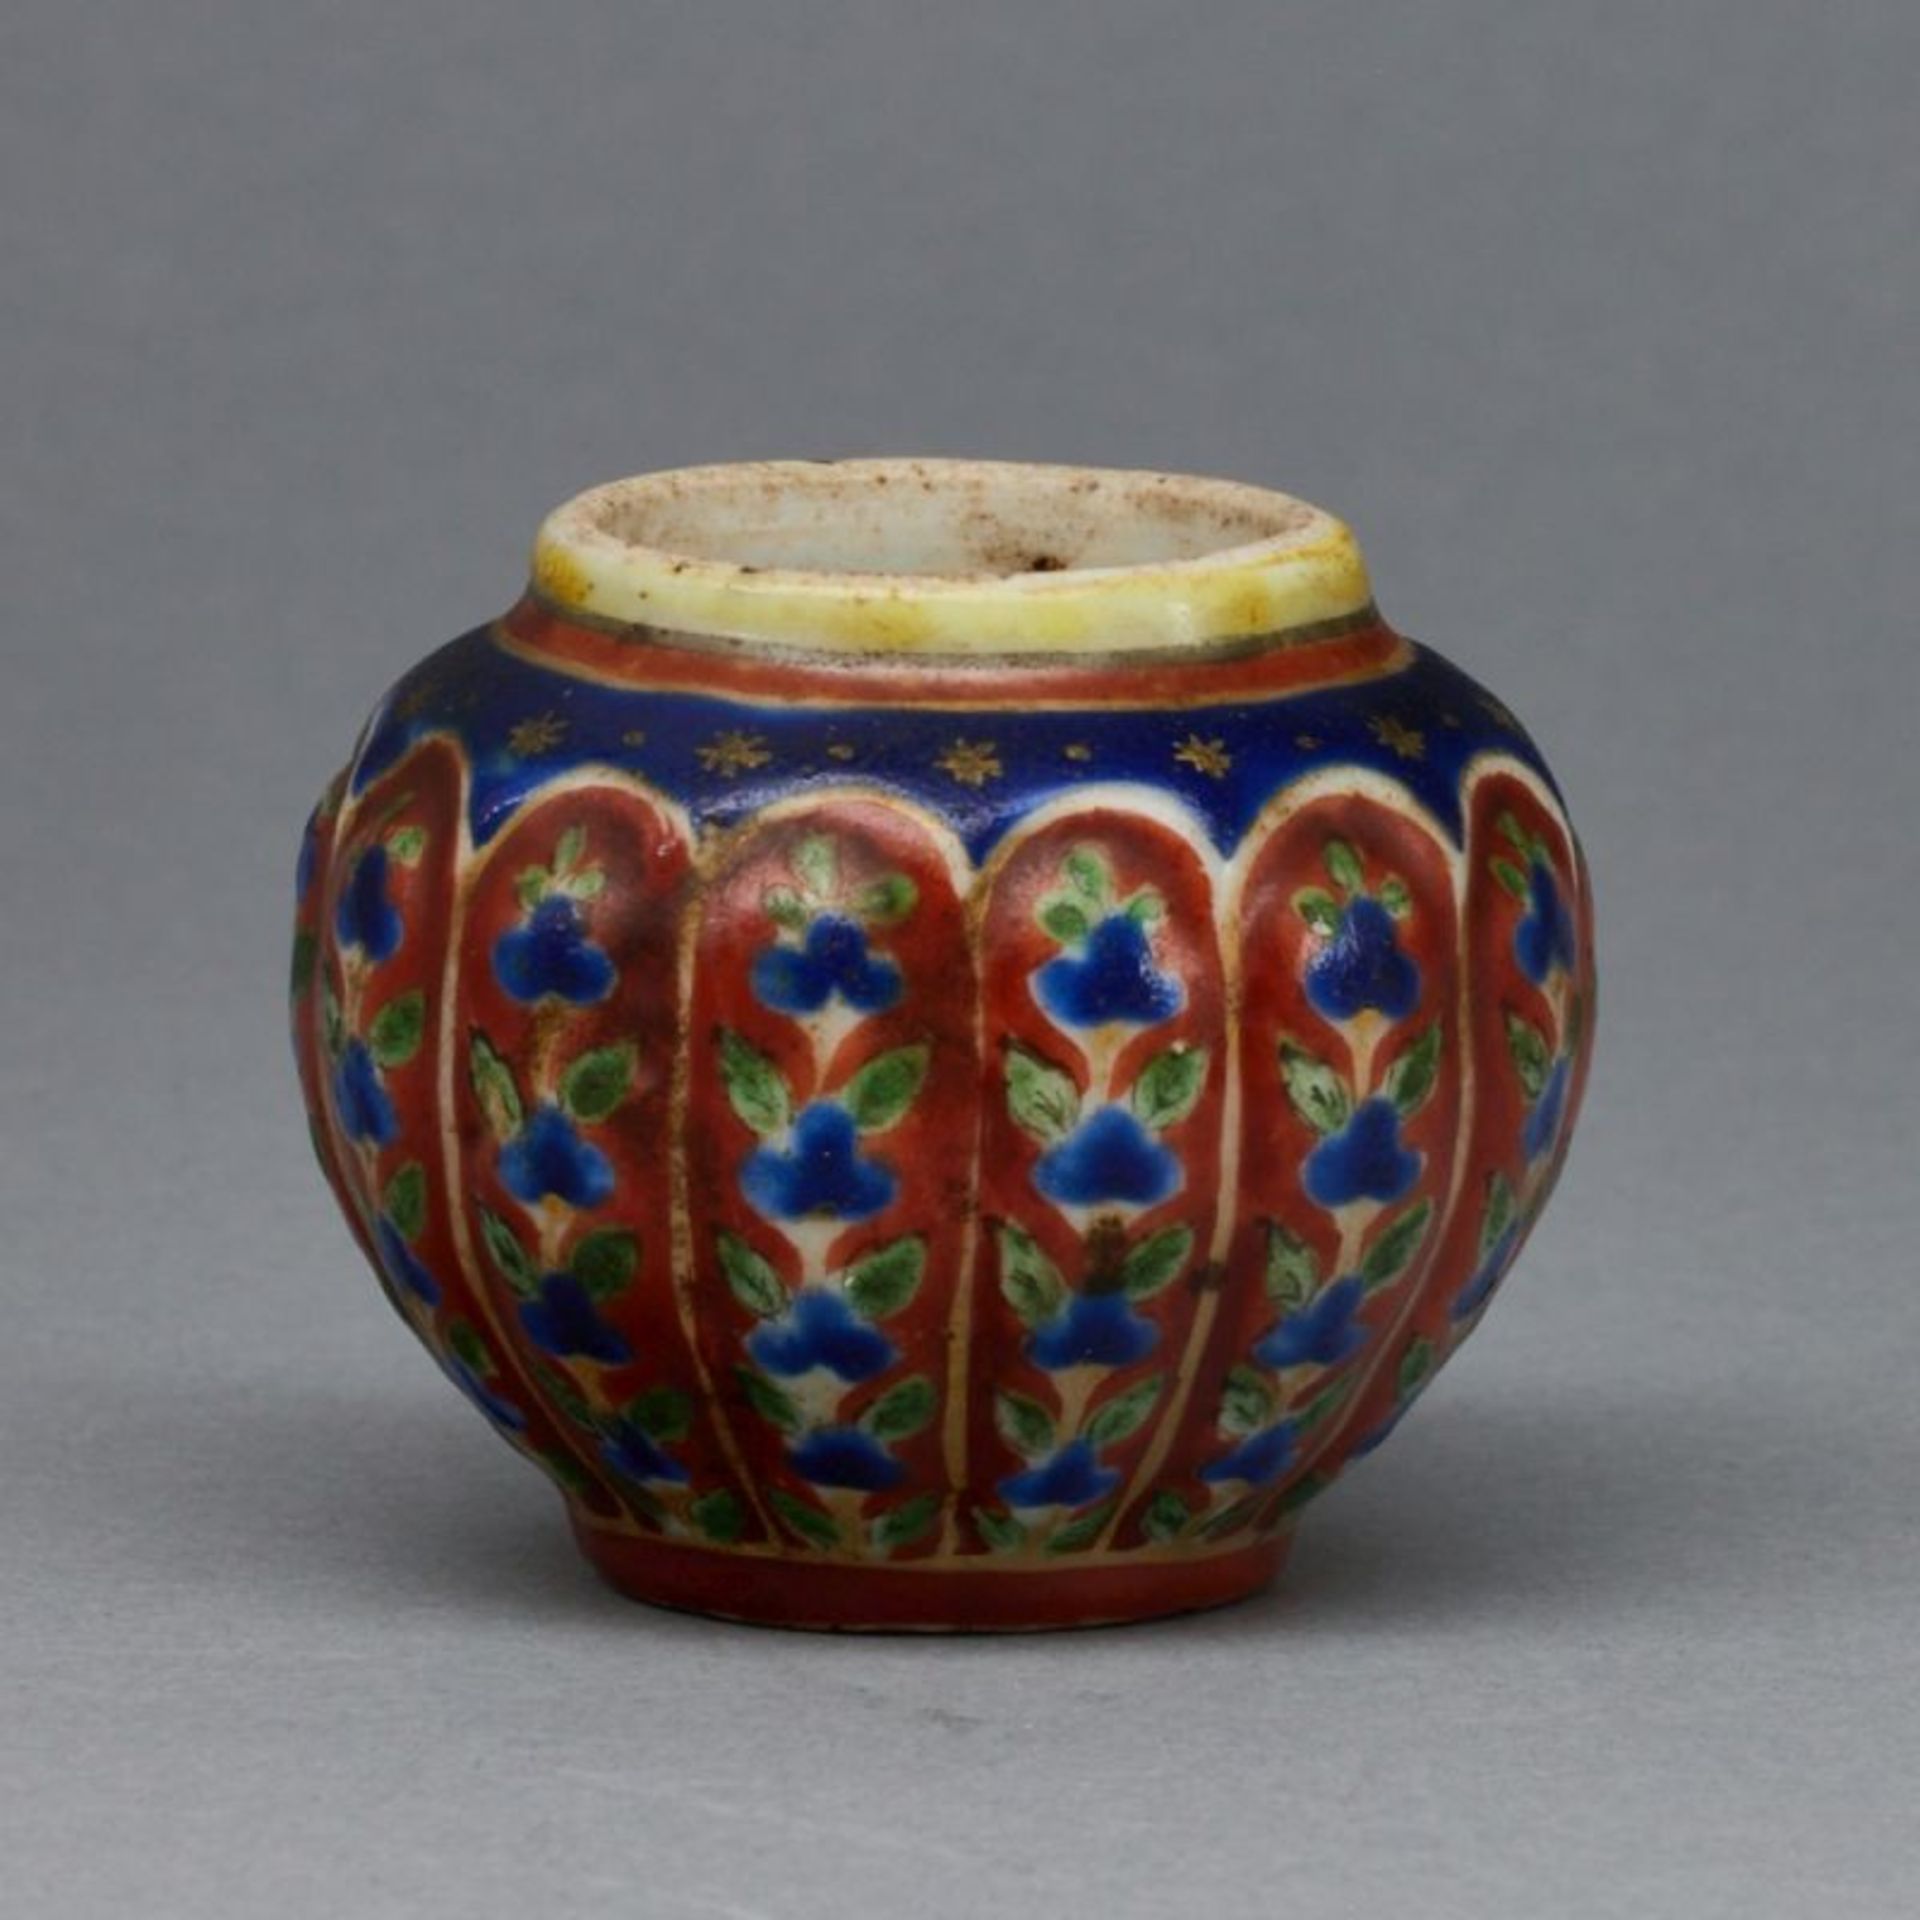 Kleiner Wasserbehälter / kleine Vase, China, Qing Dynastie, Ende 18. Jahrhundert oder früher - Bild 2 aus 2